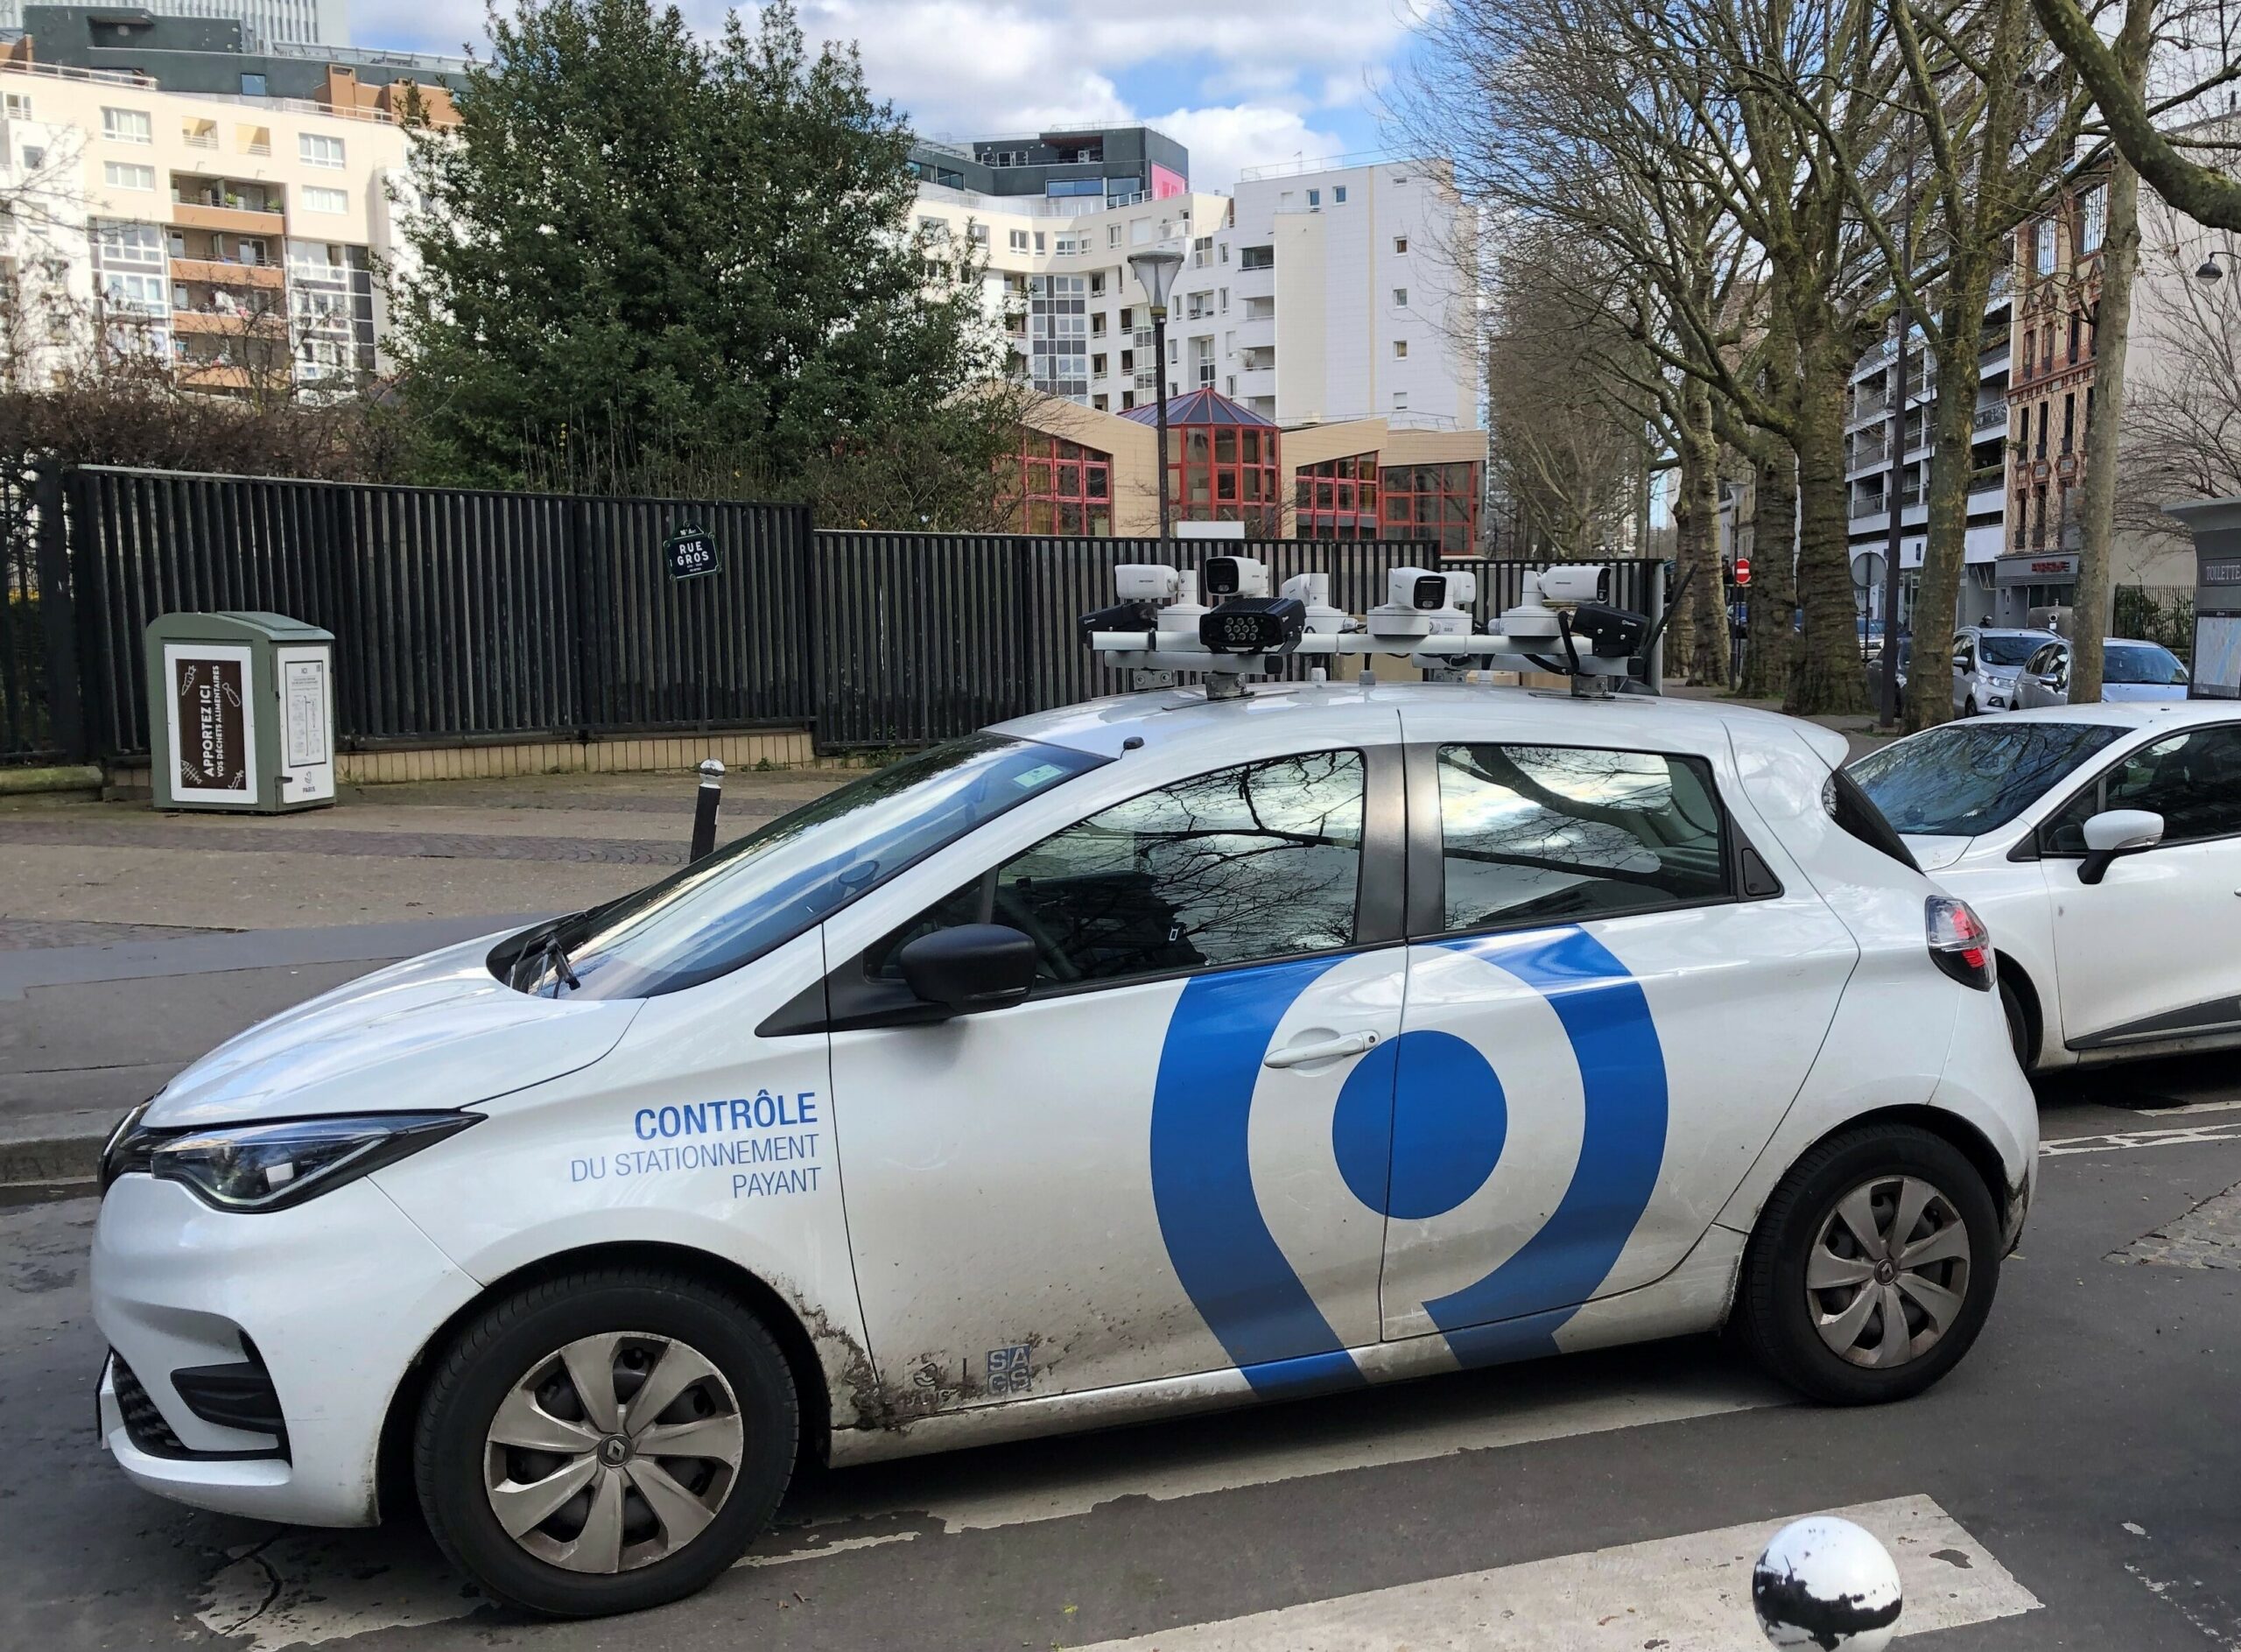 Ein Scan-Auto überprüft in Straßburg, ob für abgestellte Autos die Parkgebühren bezahlt wurden.